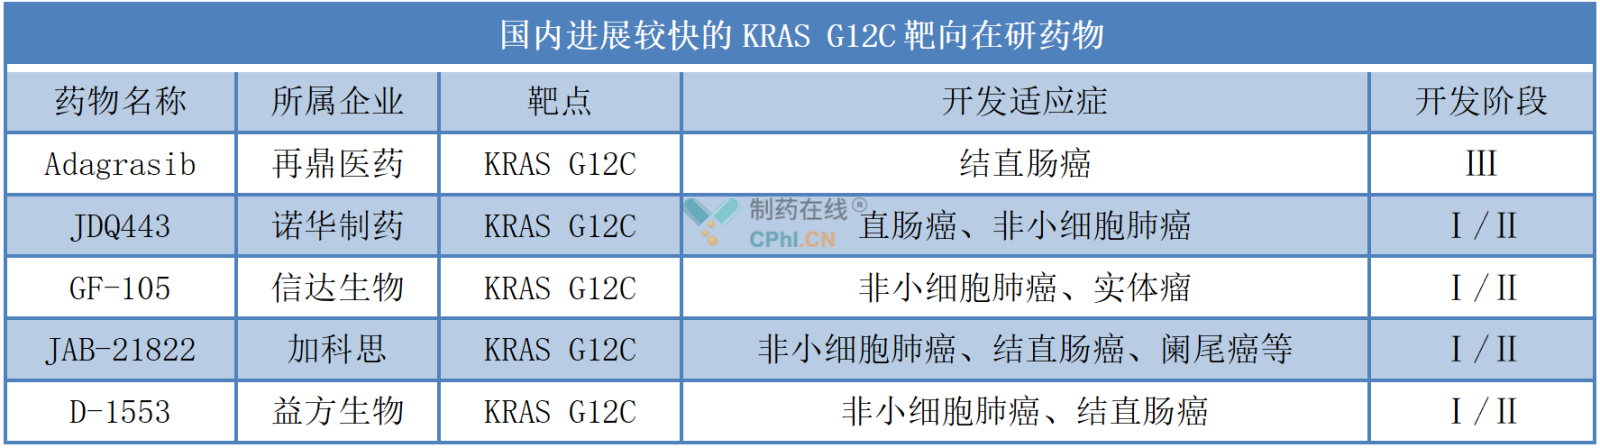 国内进展较快的KRAS G12C靶向在研药物